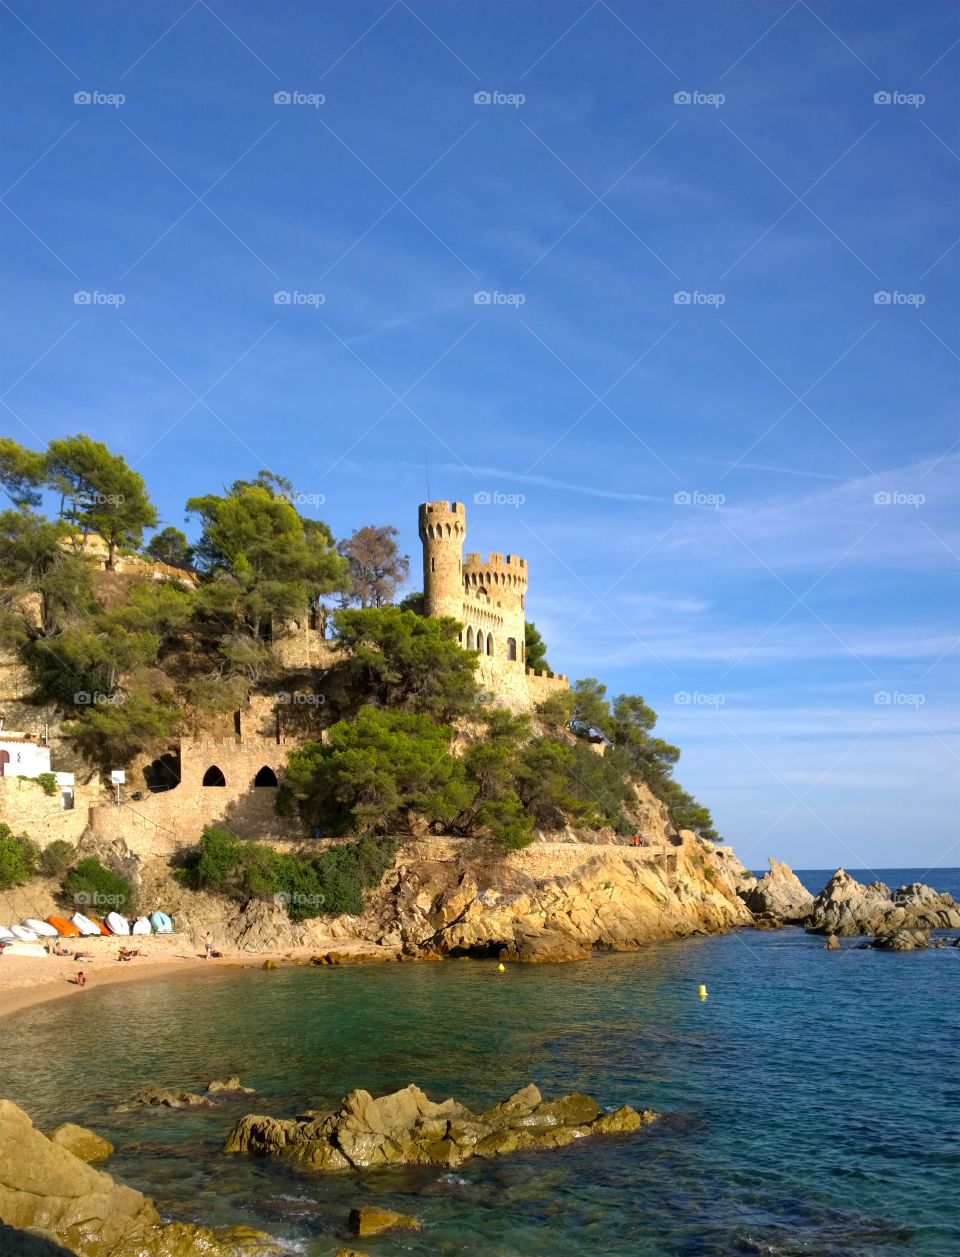 Castle in Lloret de Mar, Spain. Landscape of the Castle and Beach in Lloret de Mar, Costa Brava, Girona, Spain